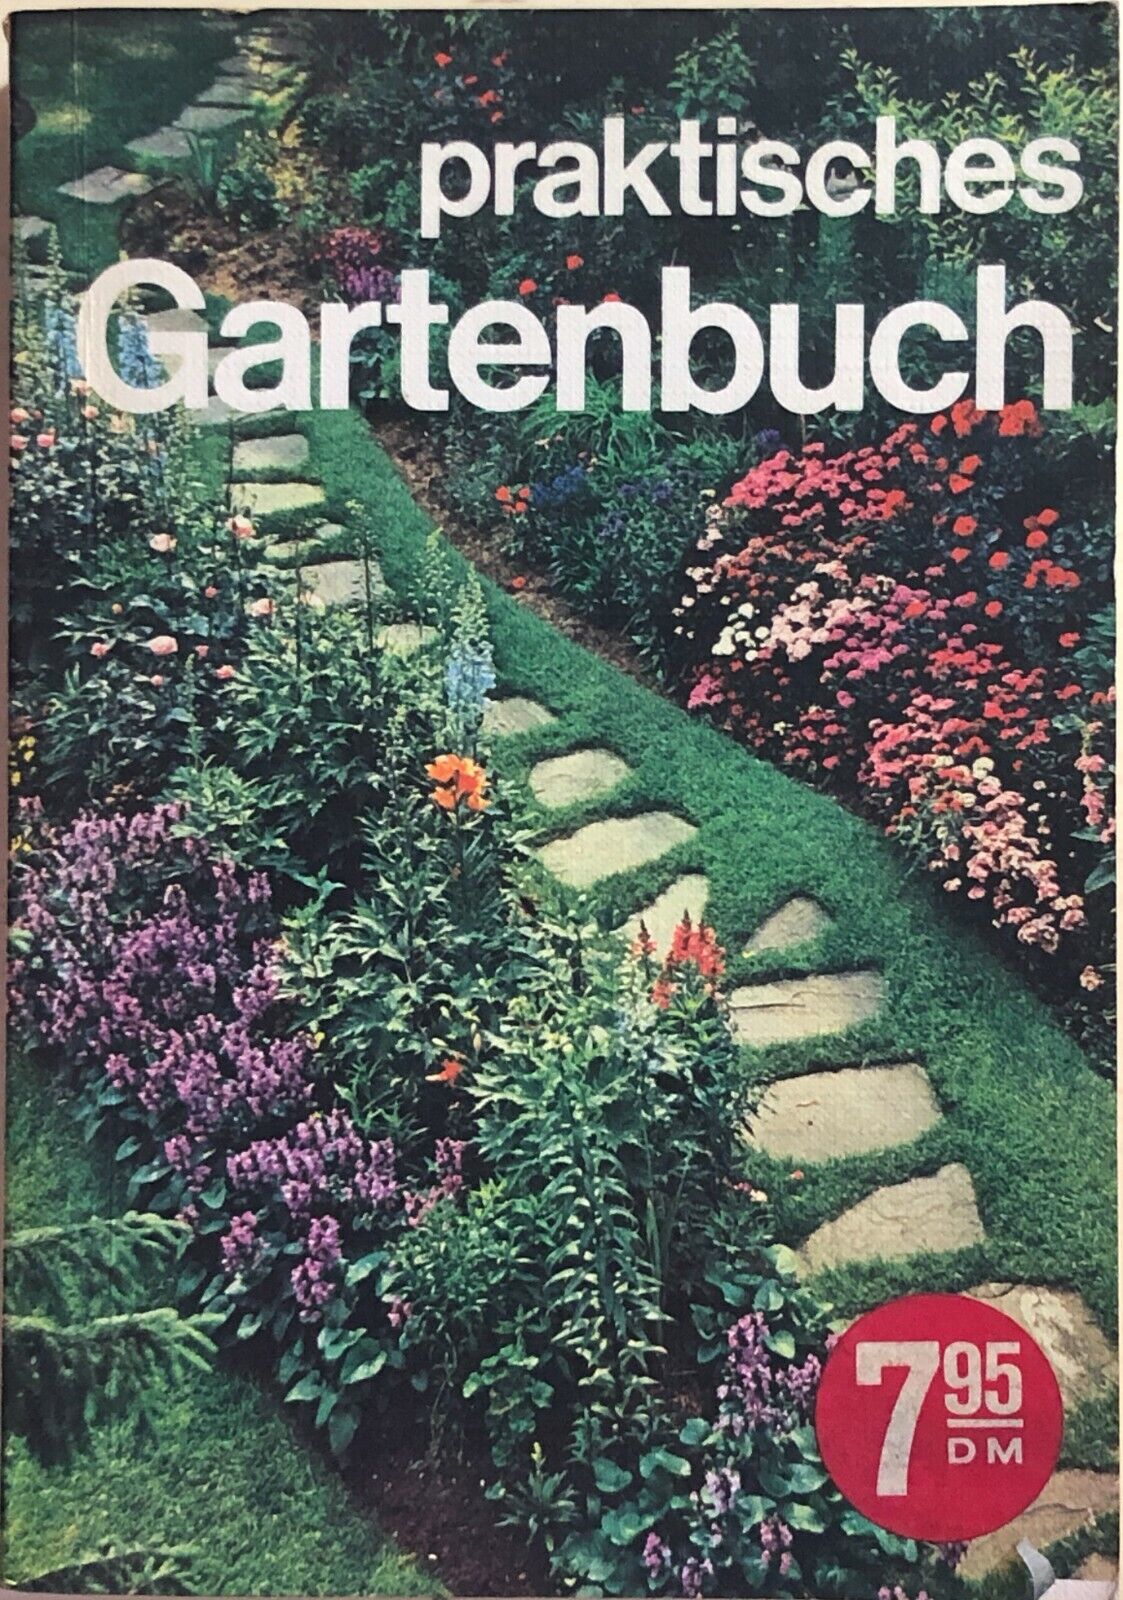 Praktisches Gartenbuch di Werner Sembritzki, 1974, Buch Und Zeit Verlagsgesellsc